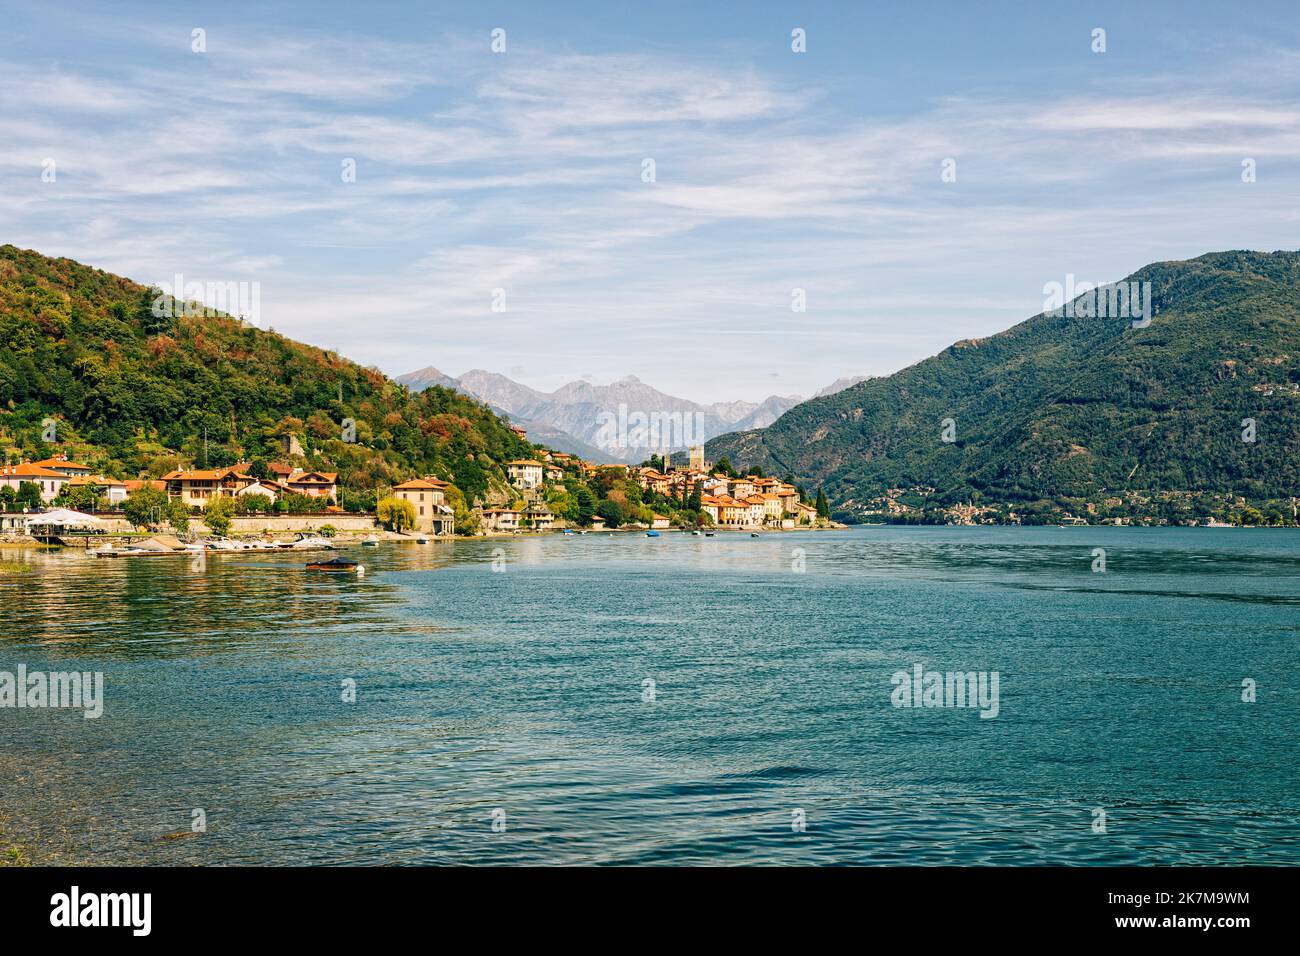 Santa Maria Rezzonico, lago occidental del Lago di Como, vista desde Santa Maria, montañas alpinas en el fondo Foto de stock